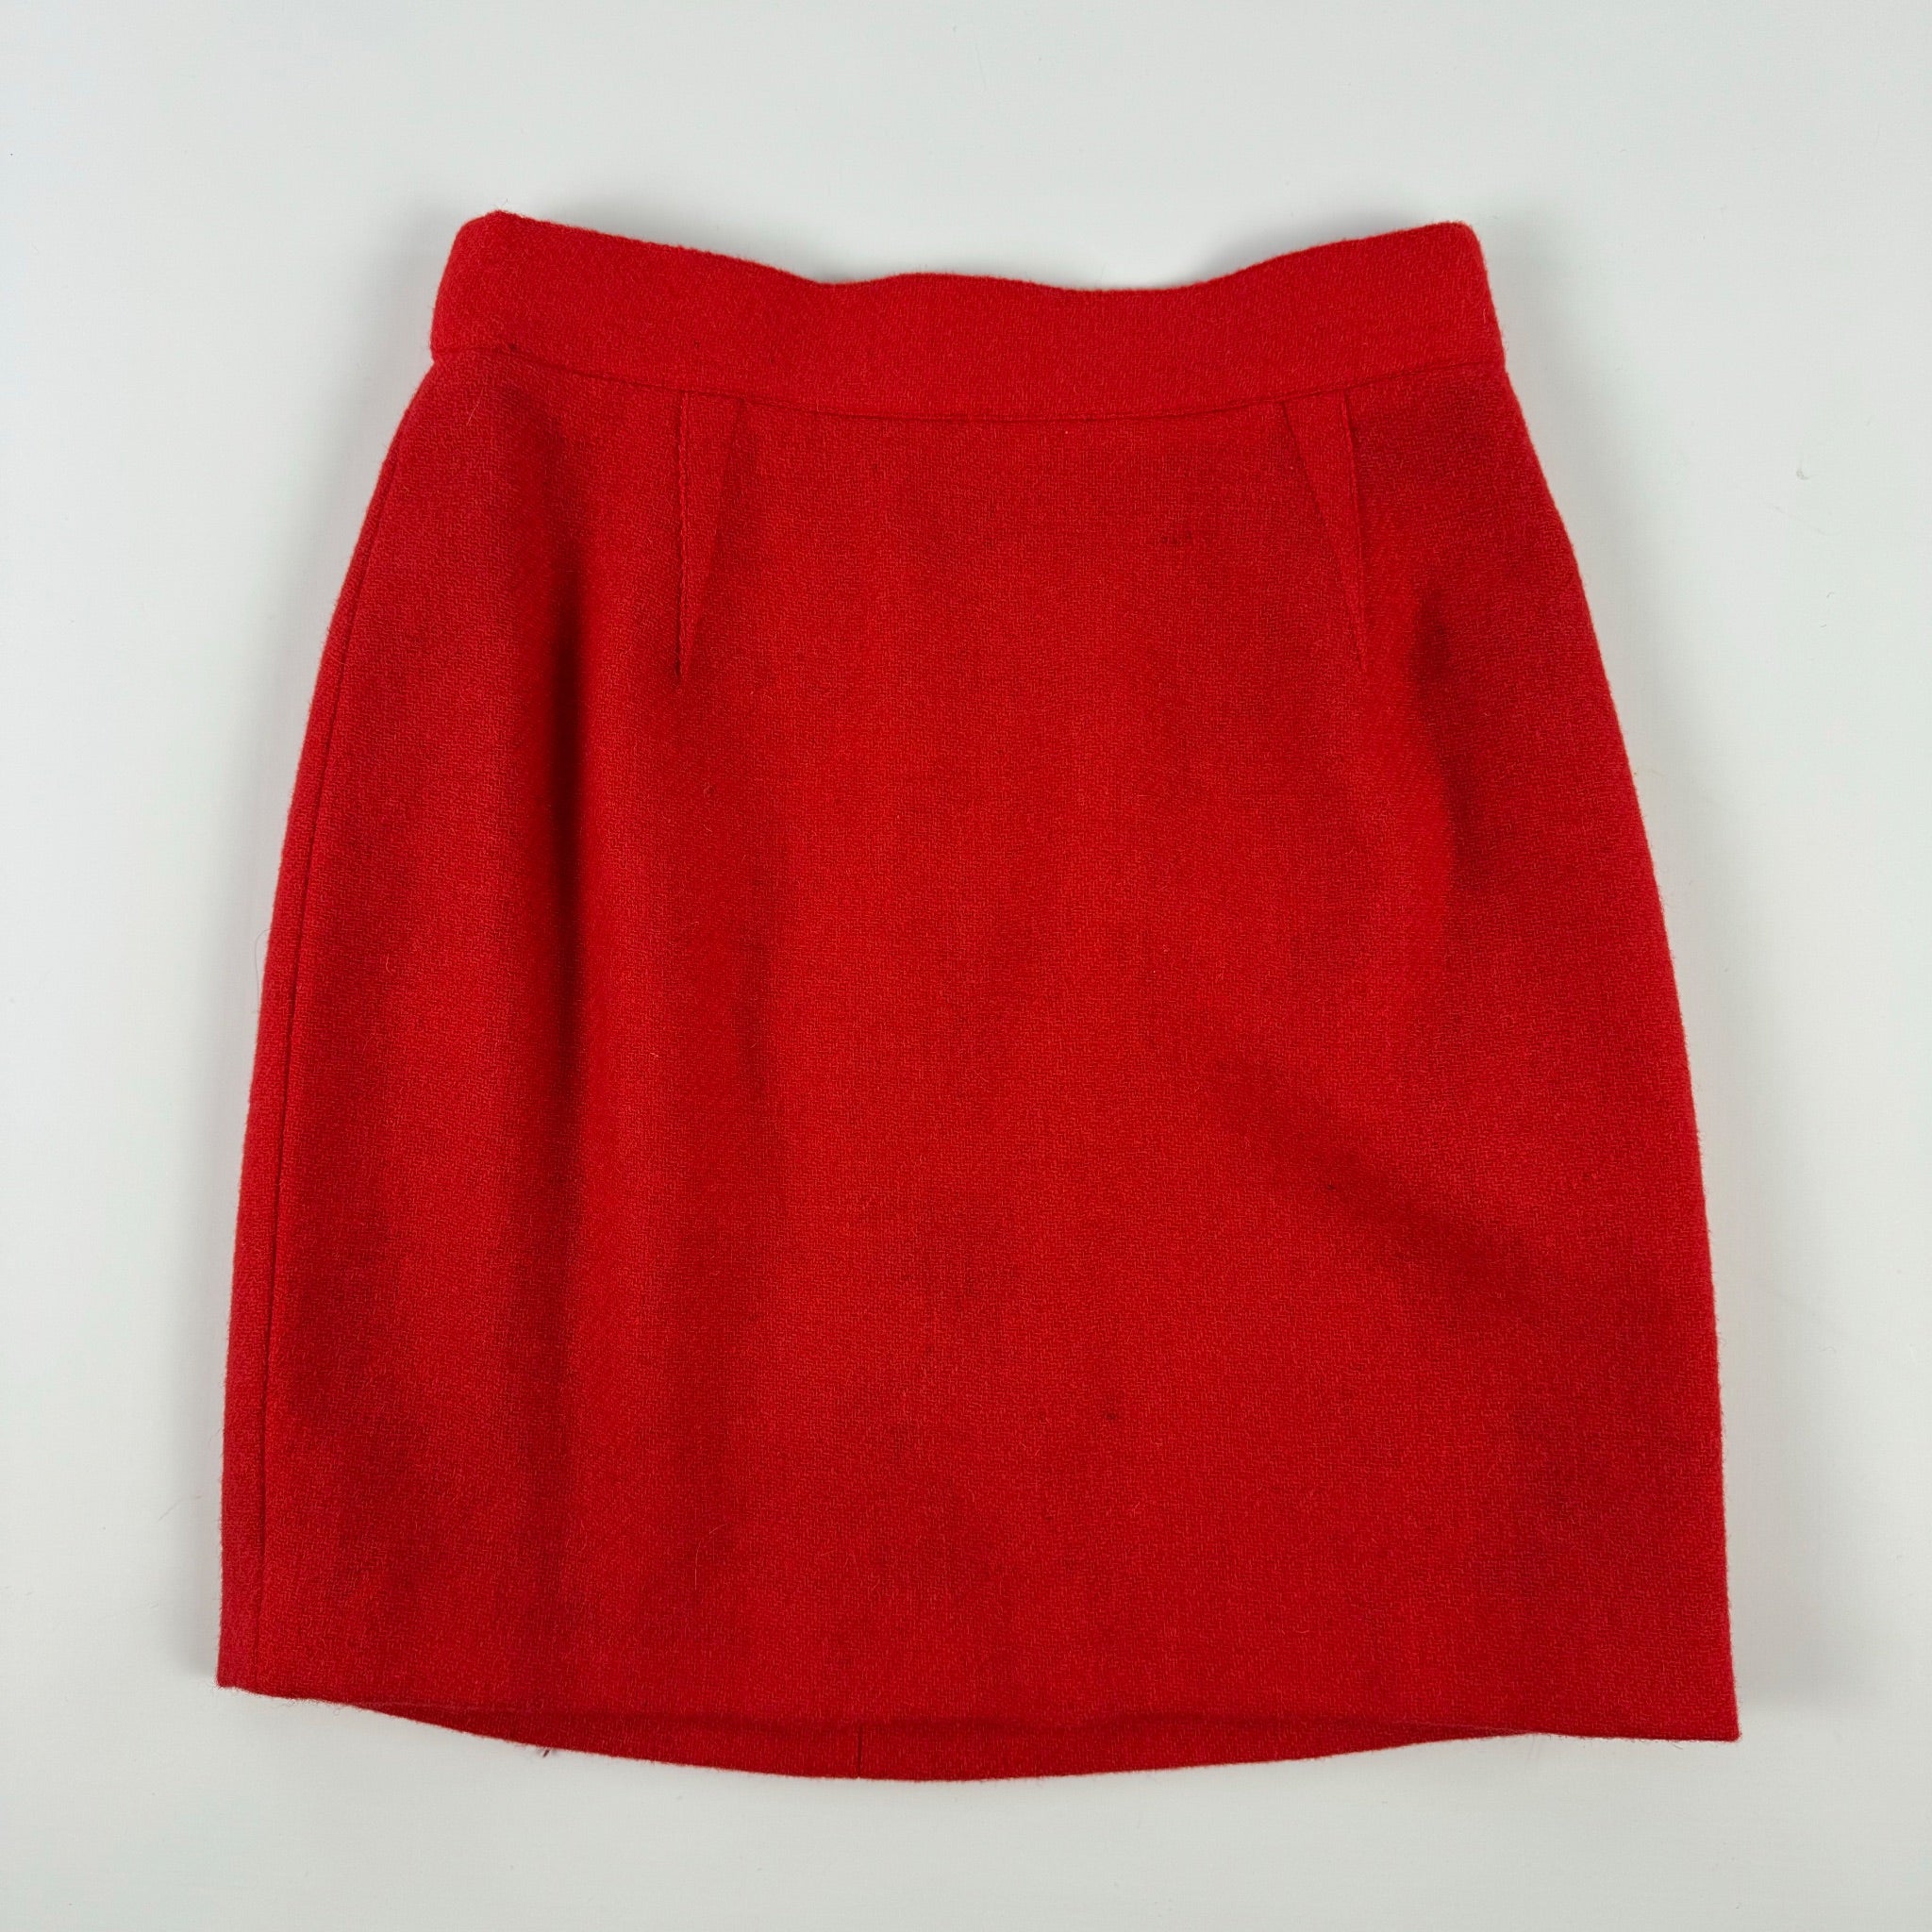 Mugler Faux Fur Lace Up Skirt Suit, 1990s - 8